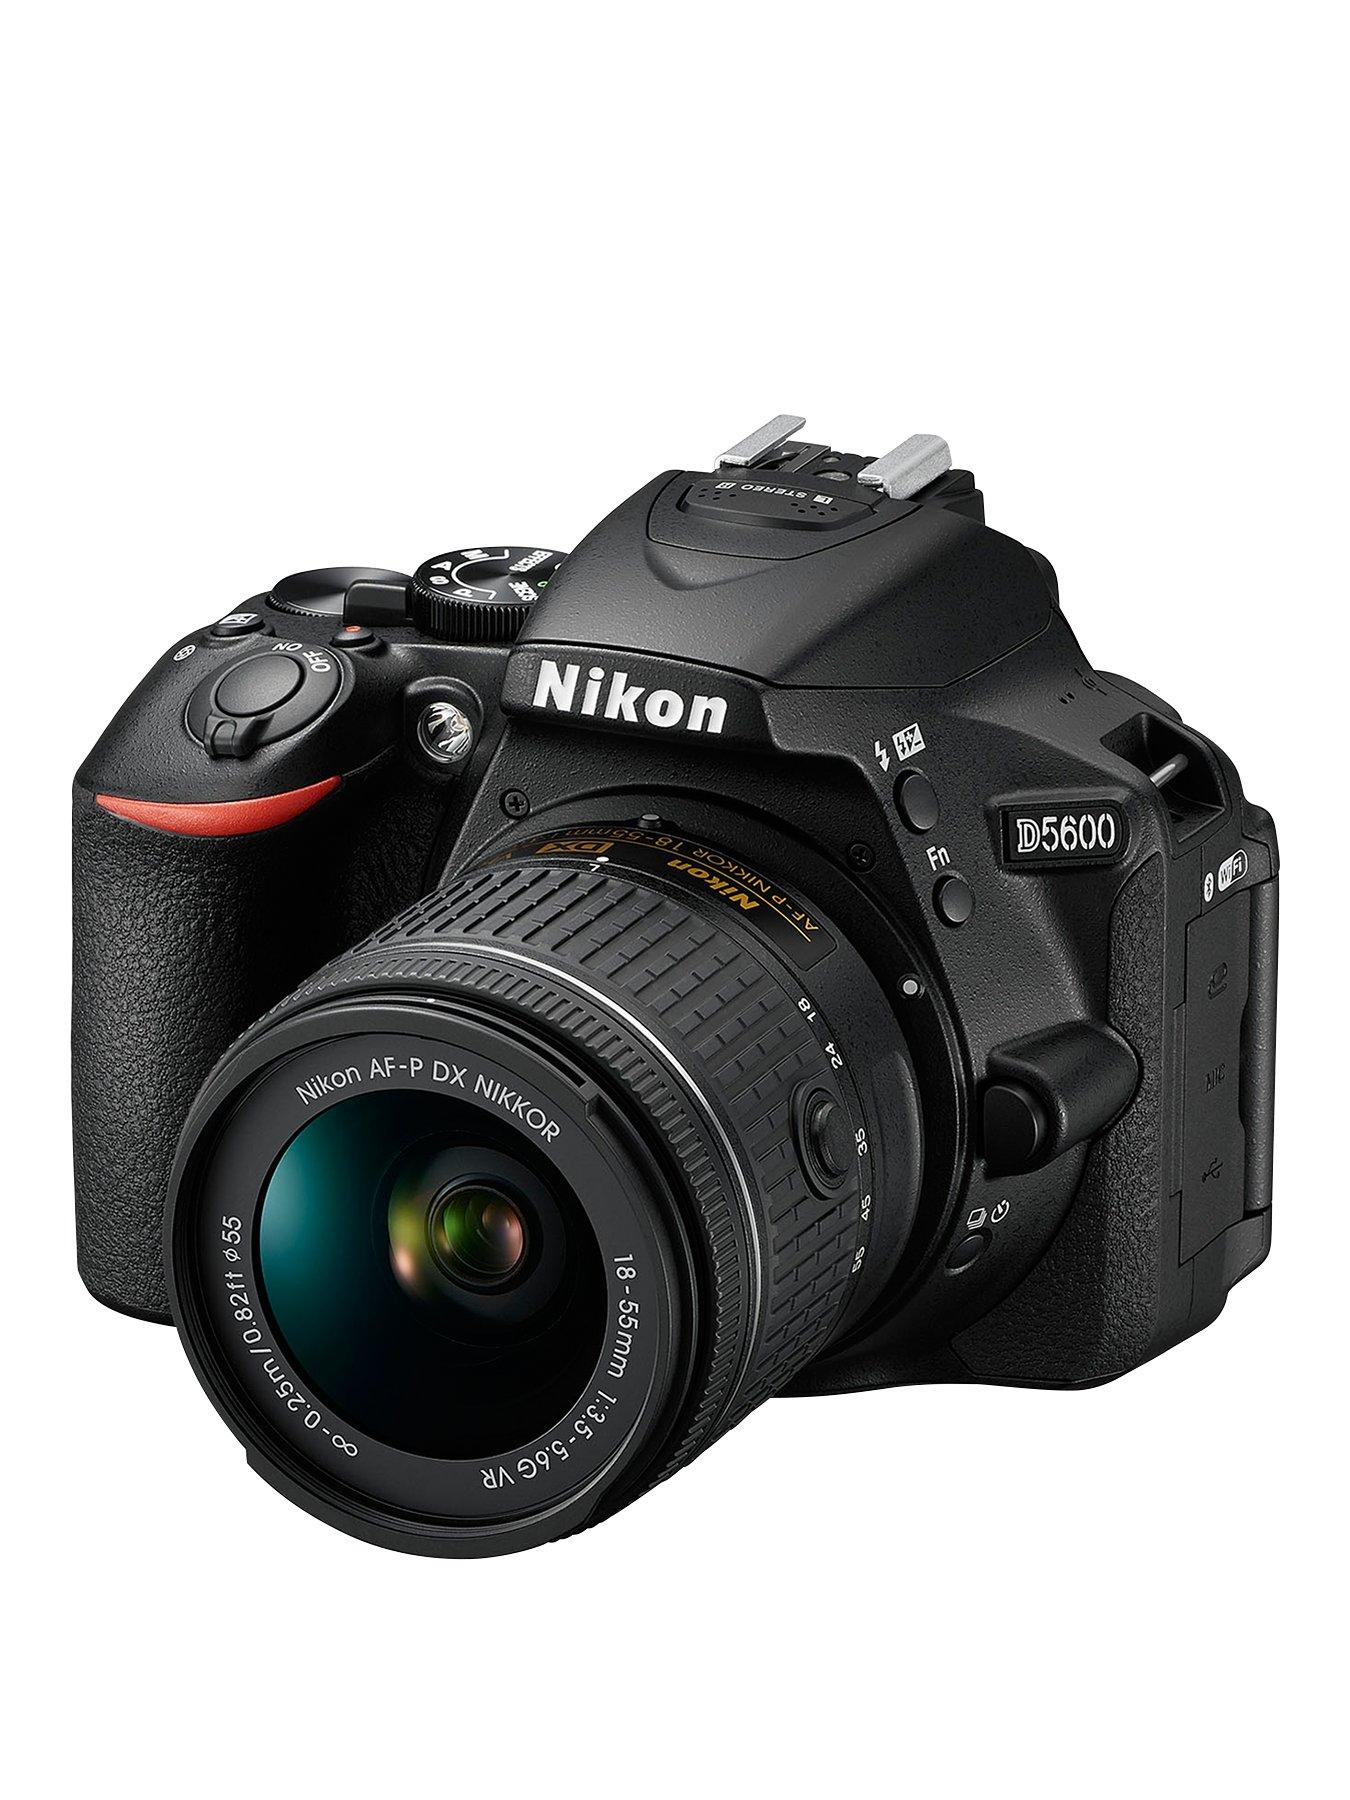 Nikon D5600 Digital Slr Camera With Af-P 18-55Mm Vr Lens